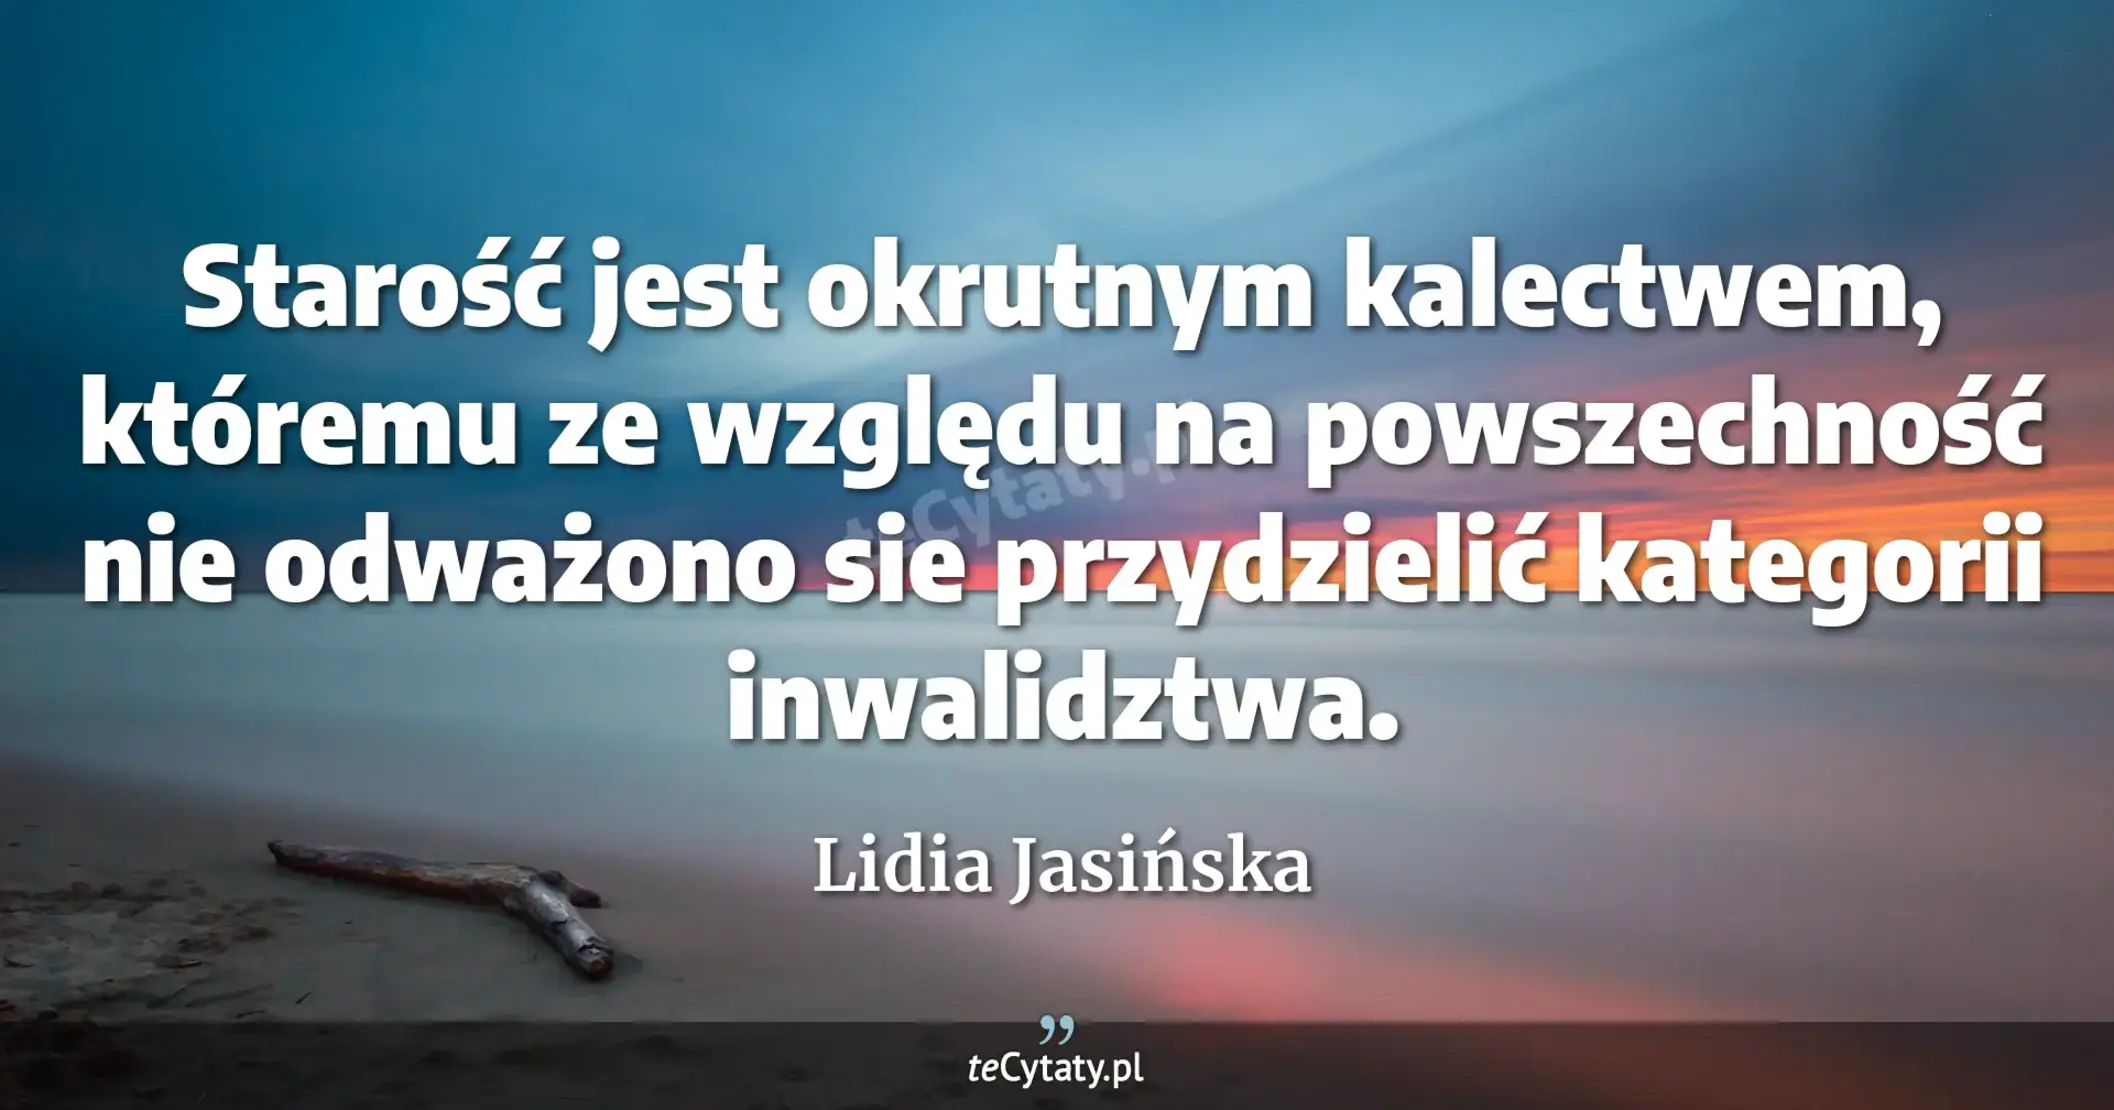 Starość jest okrutnym kalectwem, któremu ze względu na powszechność nie odważono sie przydzielić kategorii inwalidztwa. - Lidia Jasińska